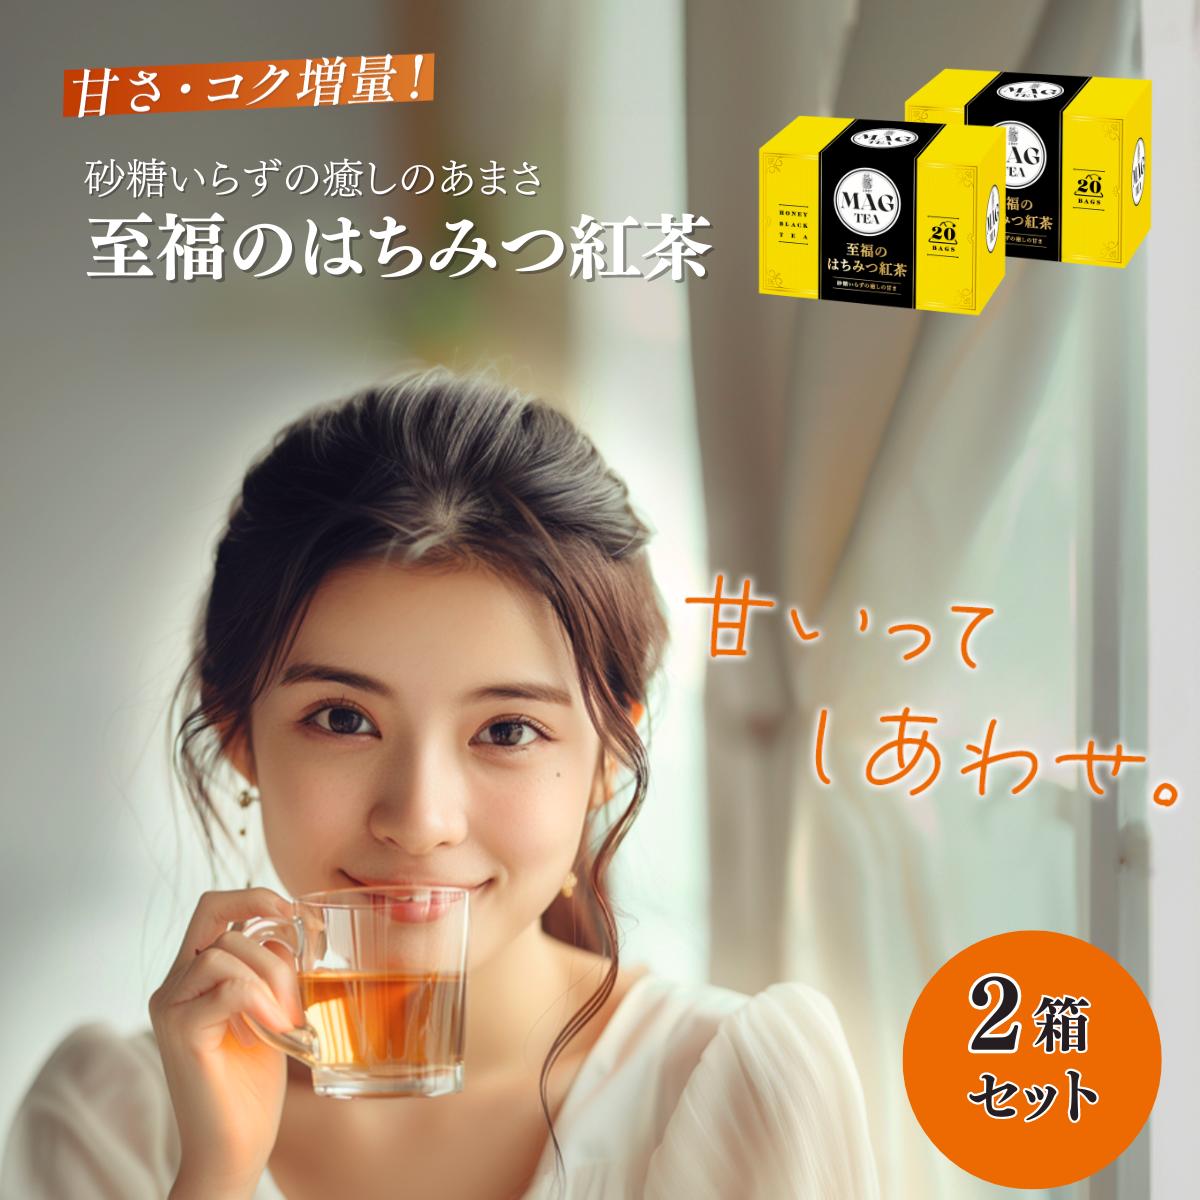 【テレビでおなじみ味博士協力】 MAG Tea 至福の はちみつ紅茶 ティーバッグ 20バッグ入り/箱 個包装